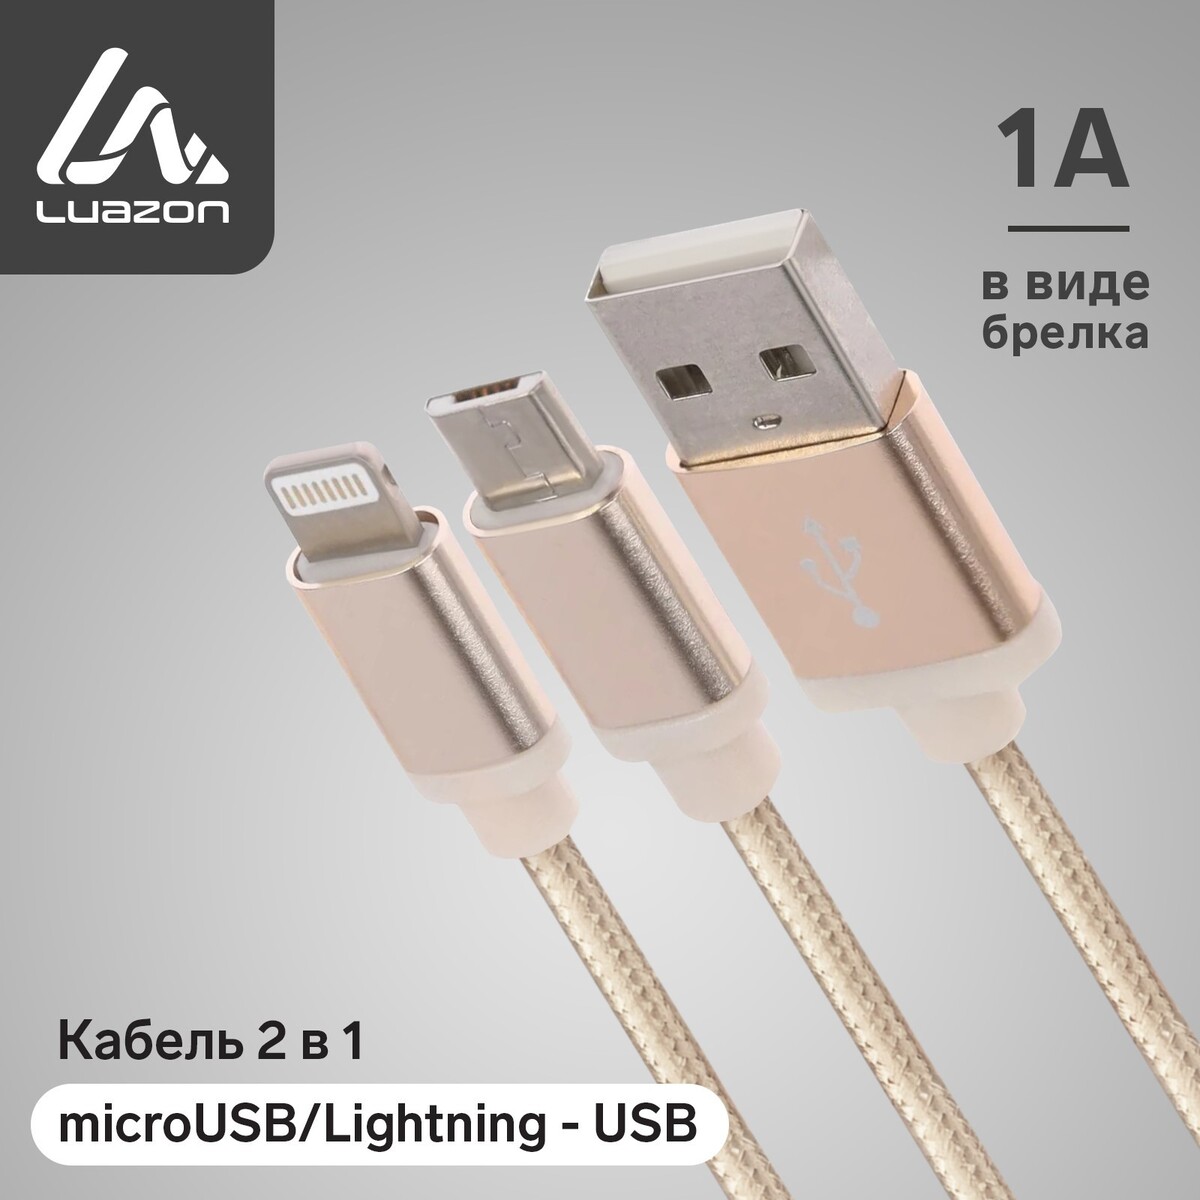 Кабель 2 в 1 luazon, microusb/lightning - usb, 1 а, в виде брелка, золотистый кабель брелок 3 в 1 microusb type c lightning usb 2 4 а синий